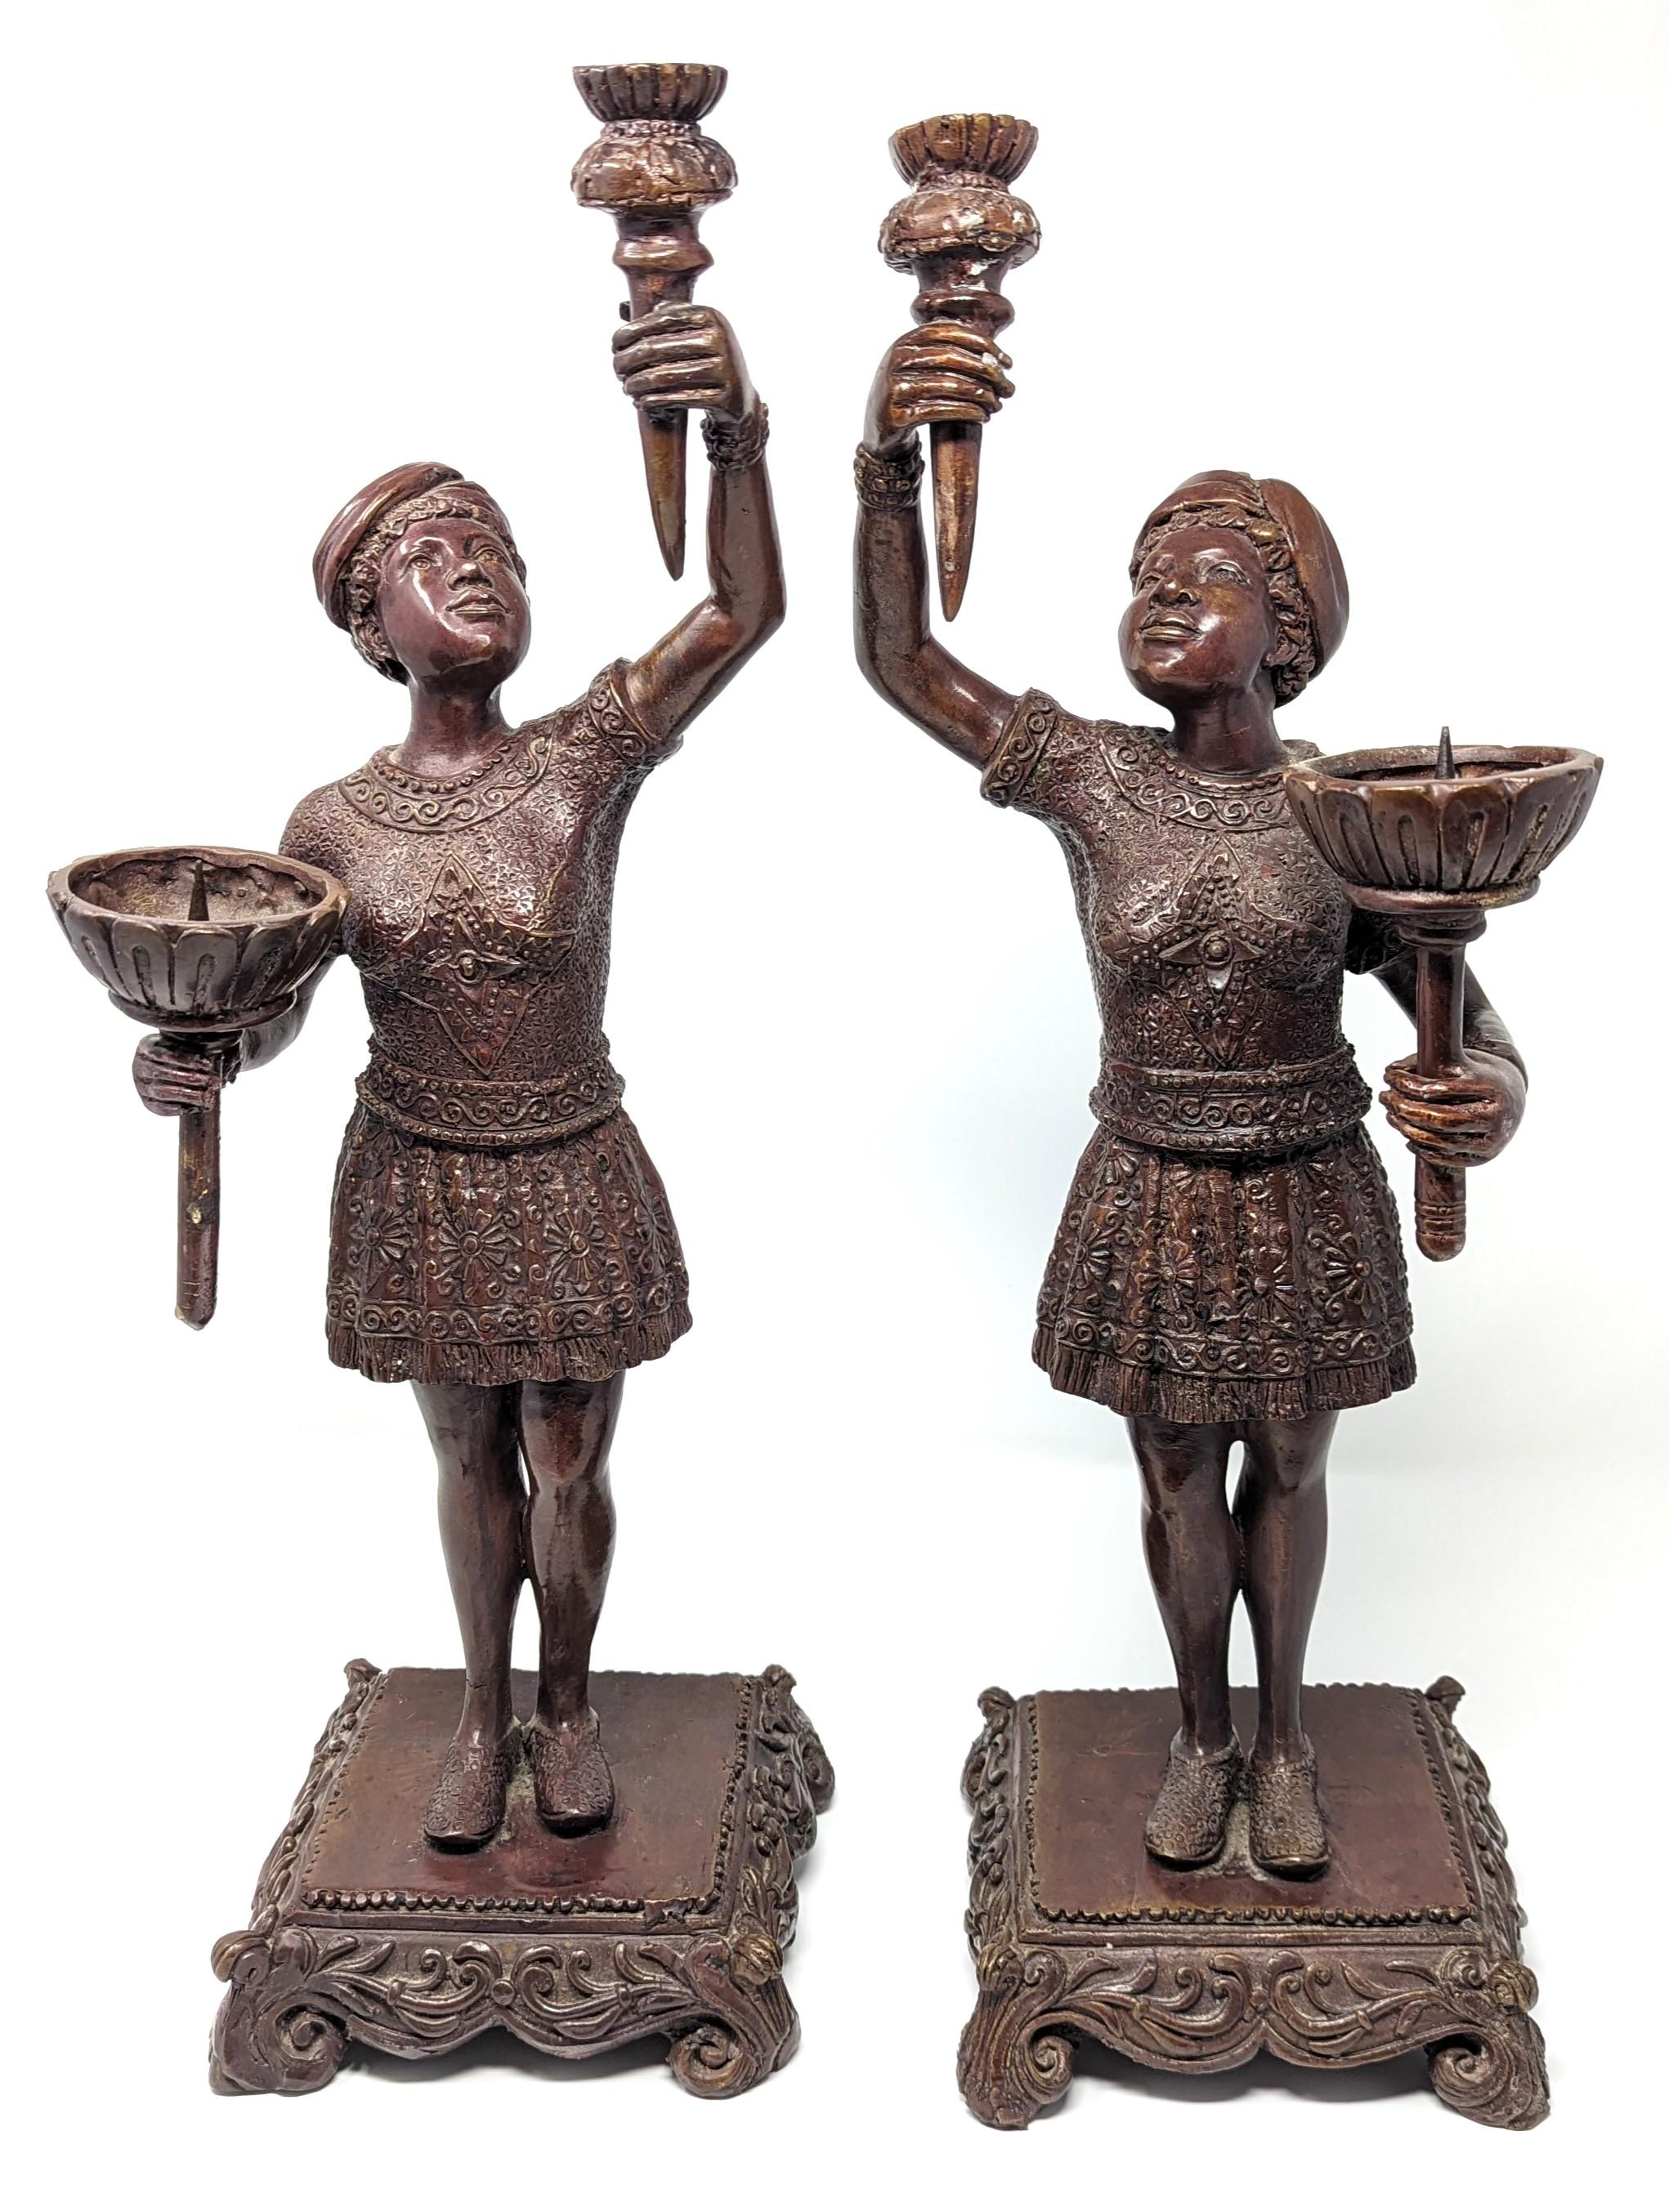 Wunderschönes Paar Kerzenhalter aus Bronze mit der Darstellung eines olympischen Fackelträgers. Aus hochwertiger Bronze gefertigt, sind sie ein einzigartiges Set, das Ihre Einrichtung bereichert. Misst etwas weniger als 19 Zoll in der Höhe mit der